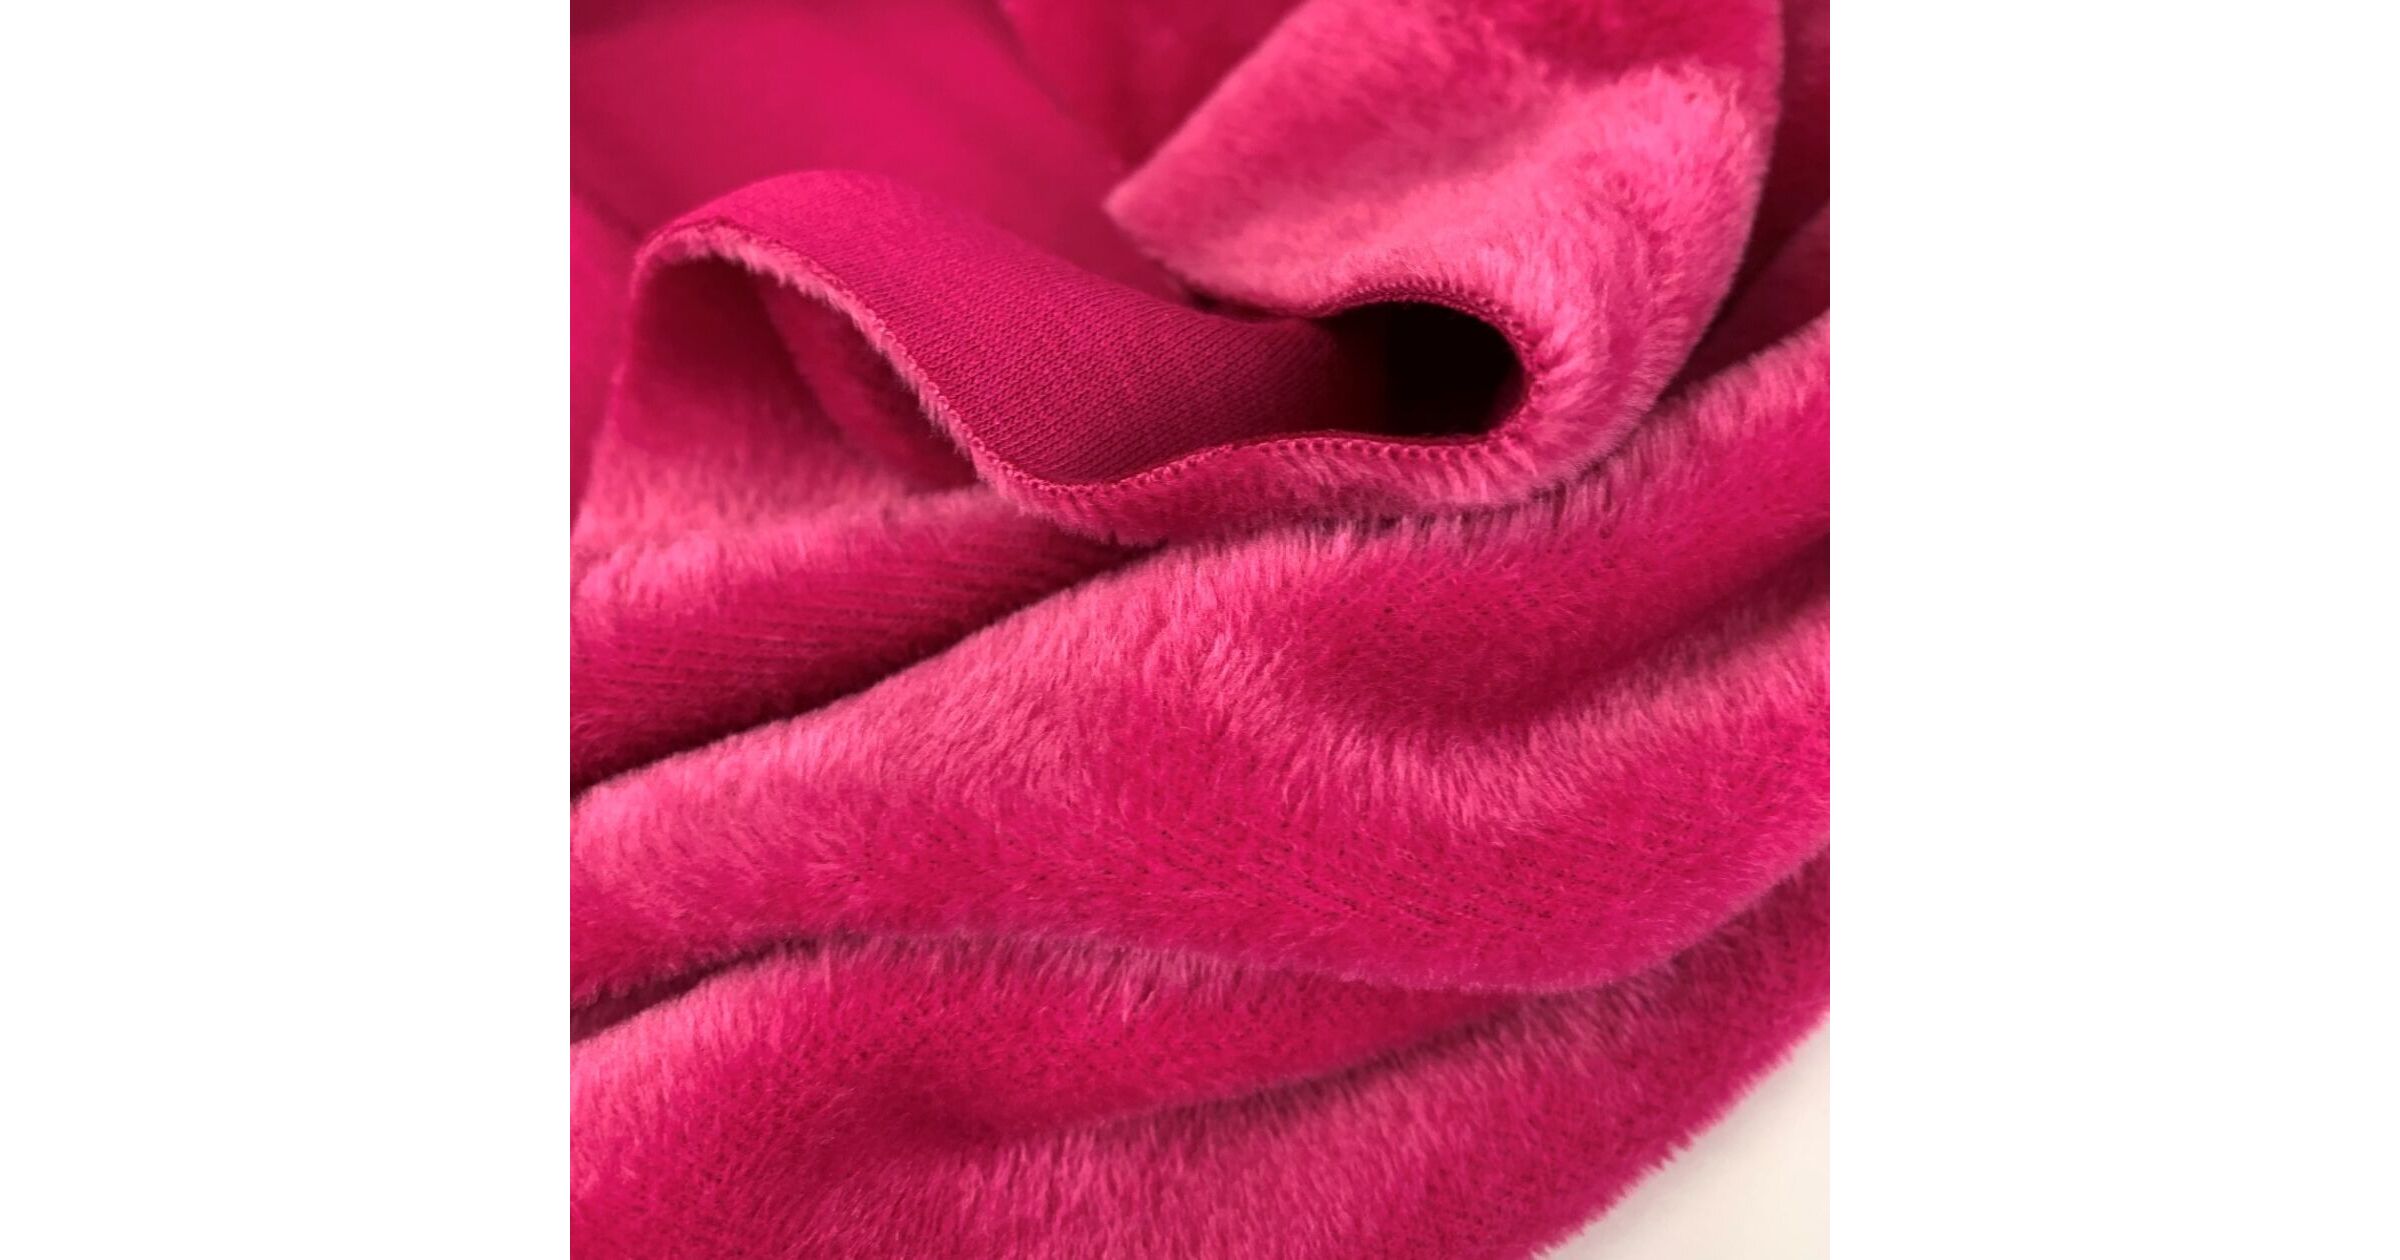 Blush Pink Marl Brushed Stretch Cotton Jacketing - 2.00 Metres